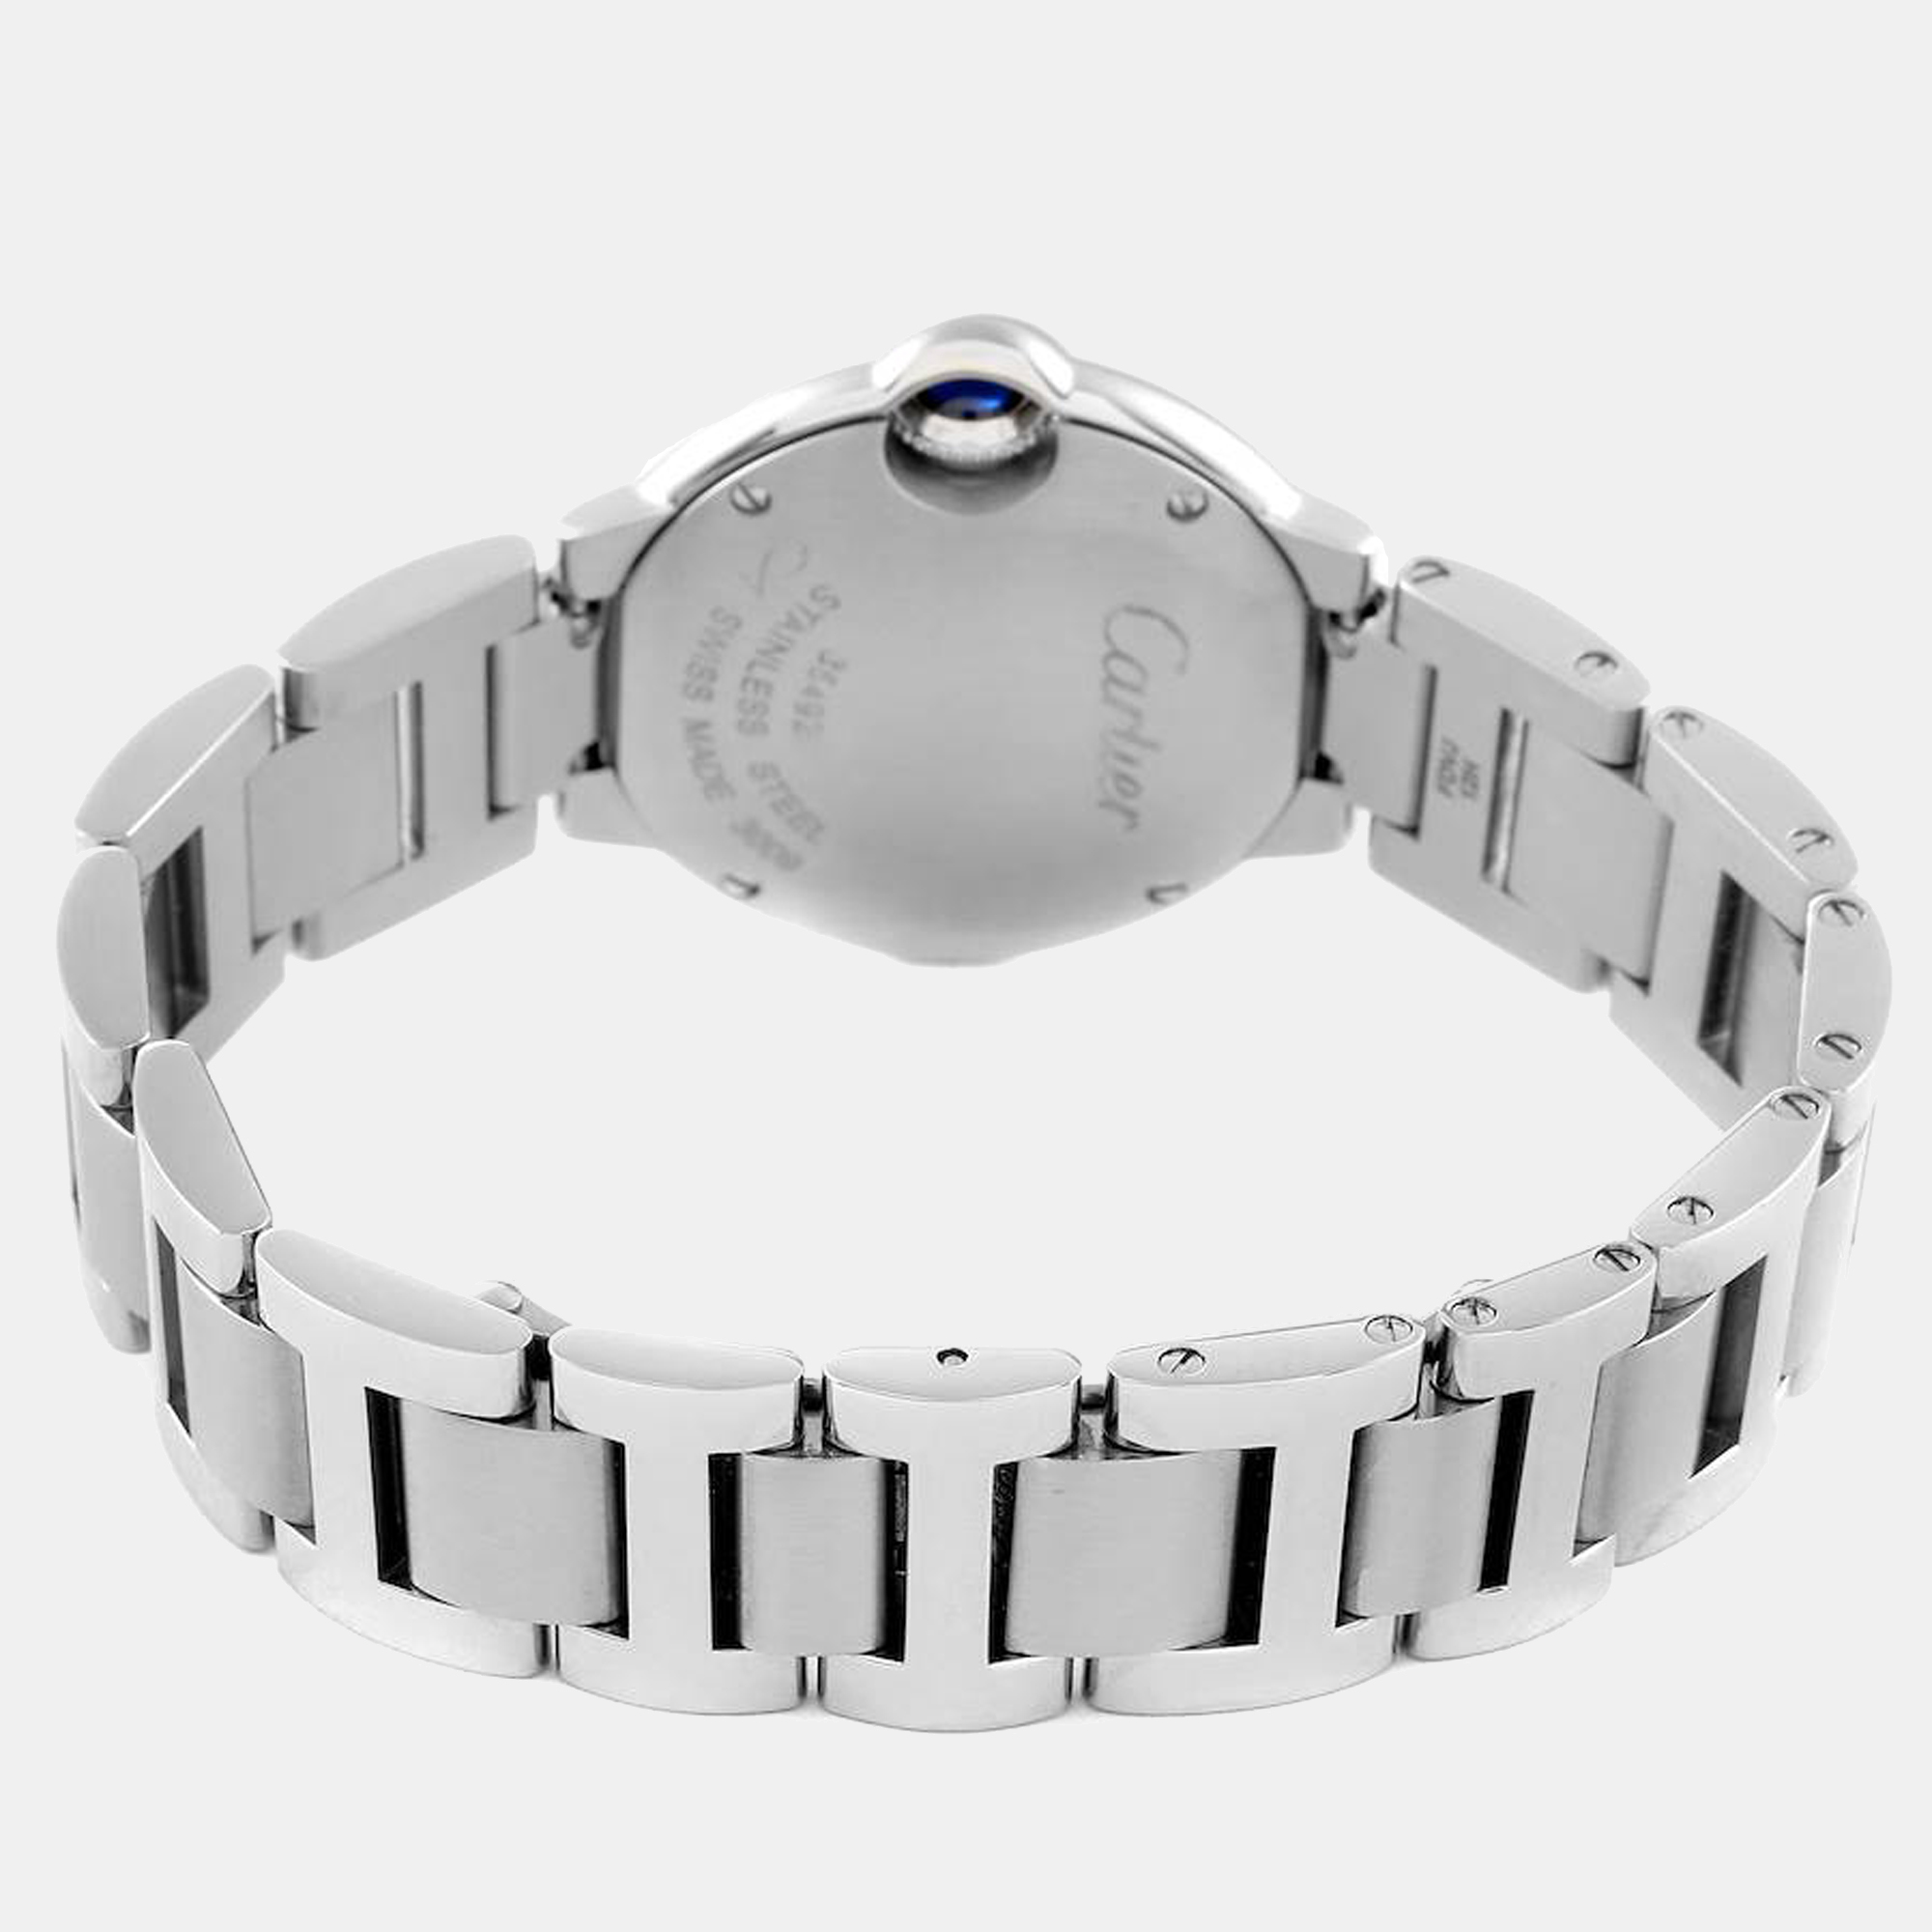 Cartier Silver Stainless Steel Ballon Bleu W69010Z4 Women's Wristwatch 28 Mm